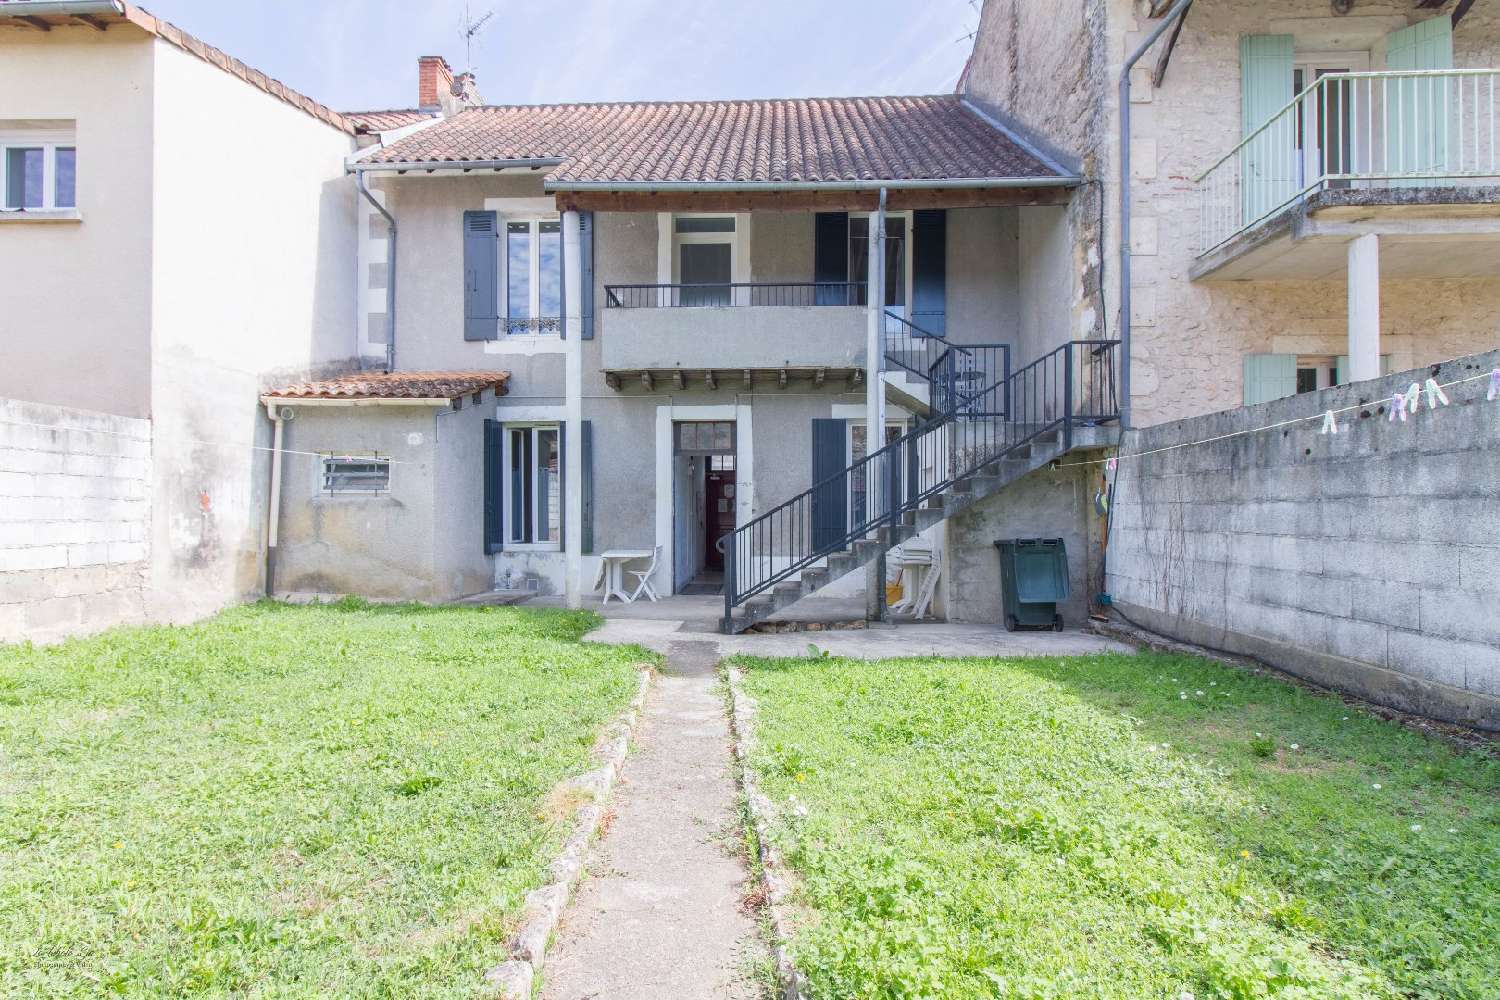  à vendre maison Périgueux Dordogne 4